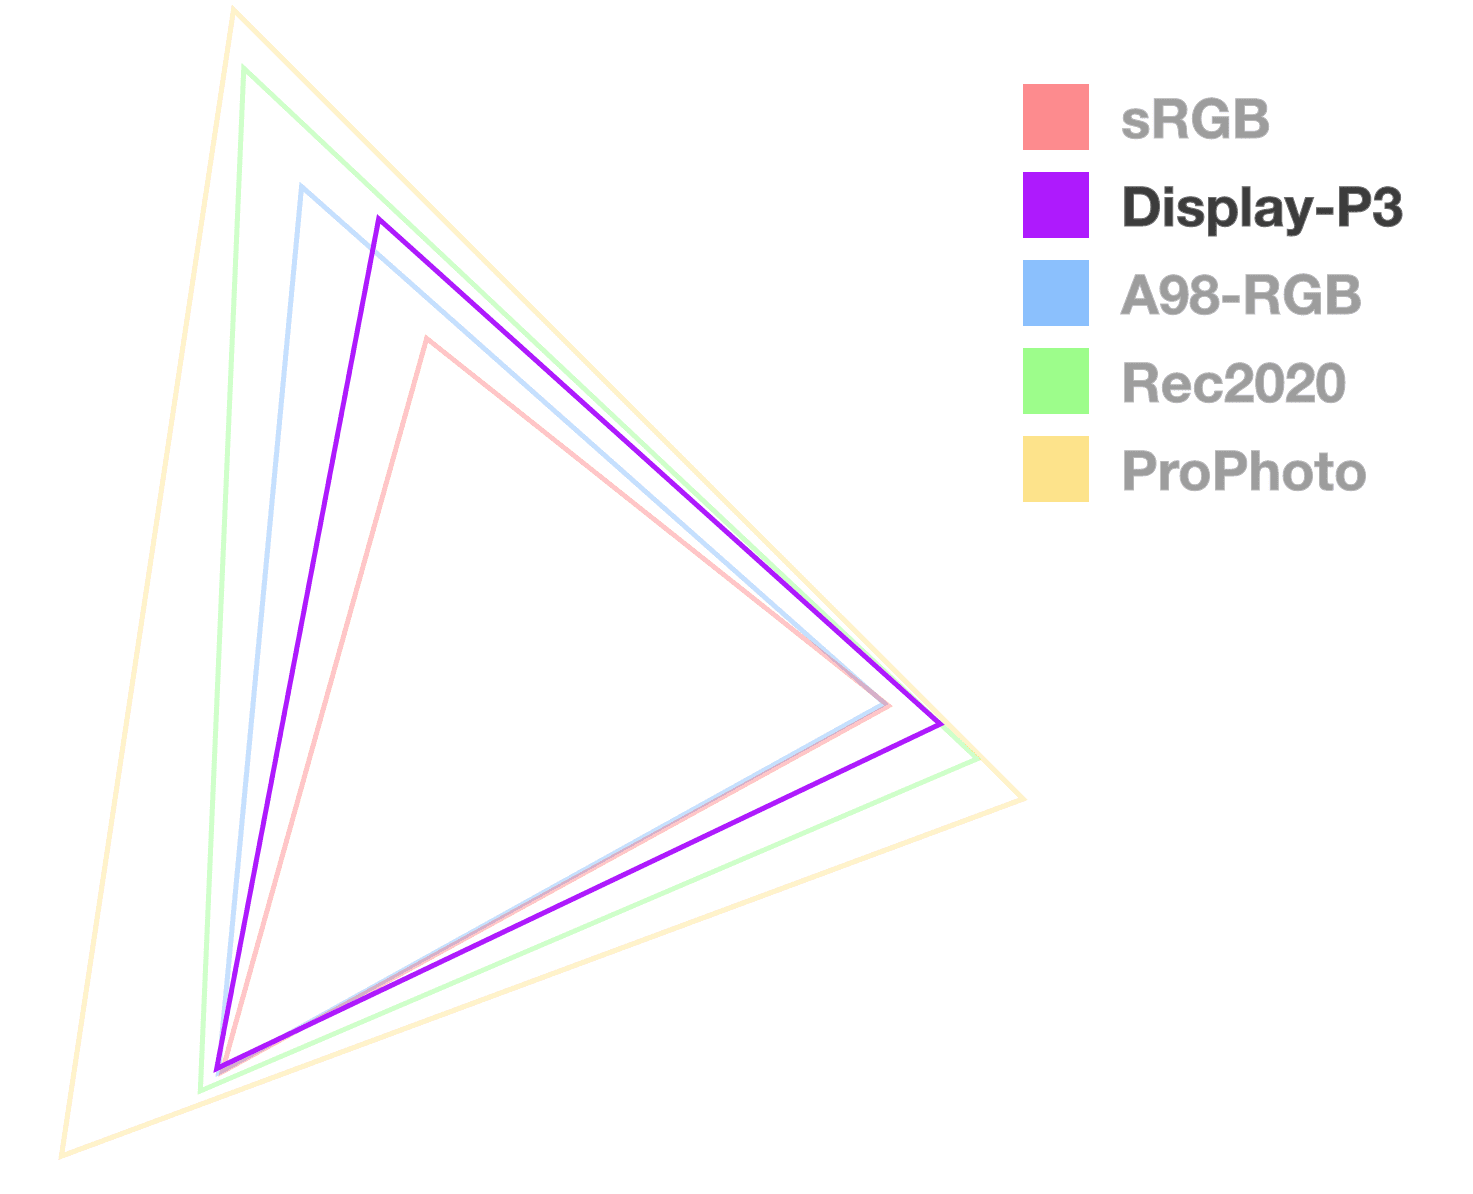 Display P3 삼각형은 완전히 불투명한 유일한 삼각형으로, 색 영역의 크기를 시각화하는 데 도움이 됩니다. 가장 작은 것에서 두 번째처럼 보입니다.